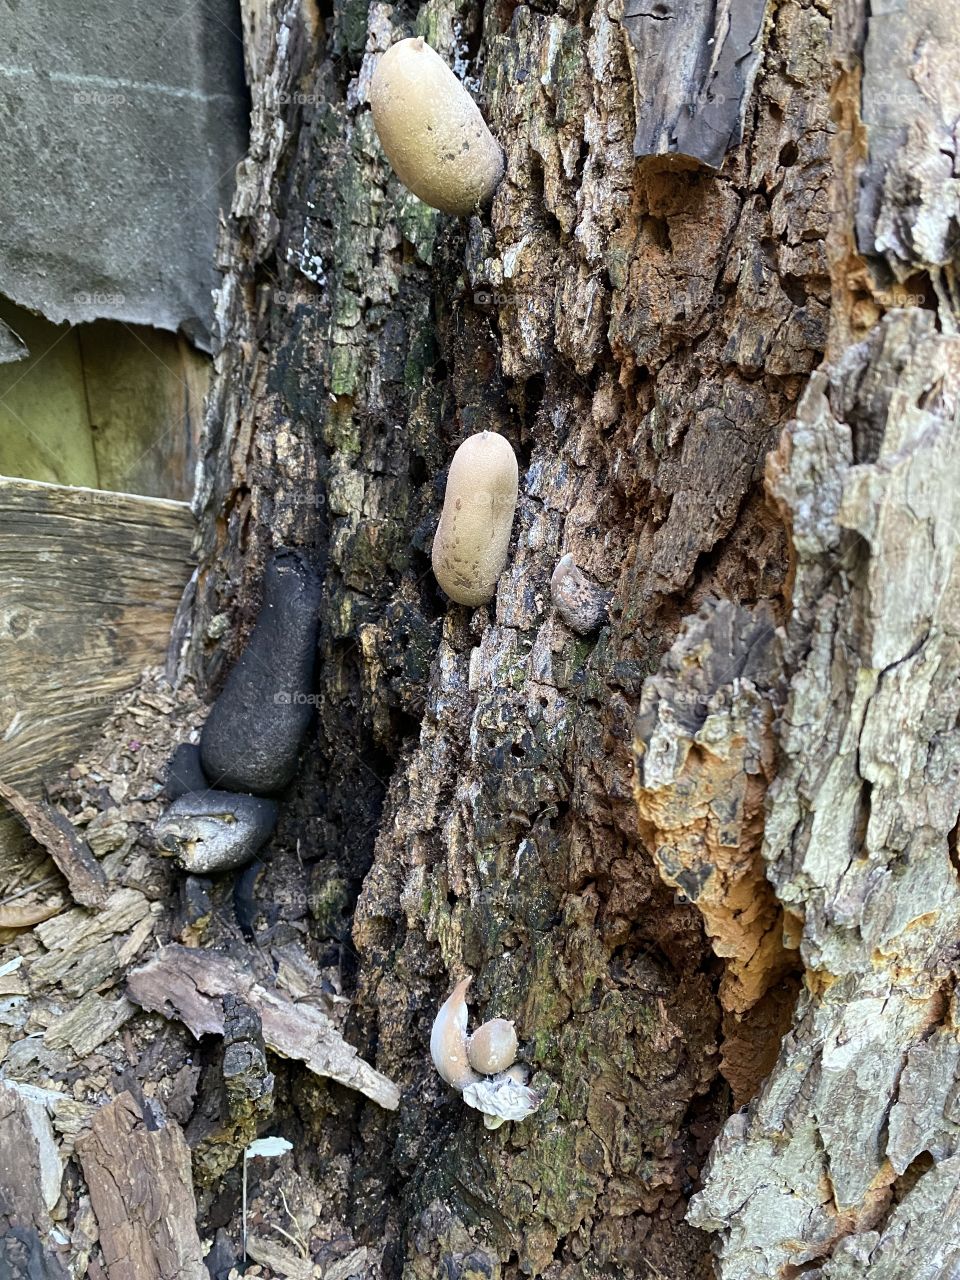 Mushroom in tree